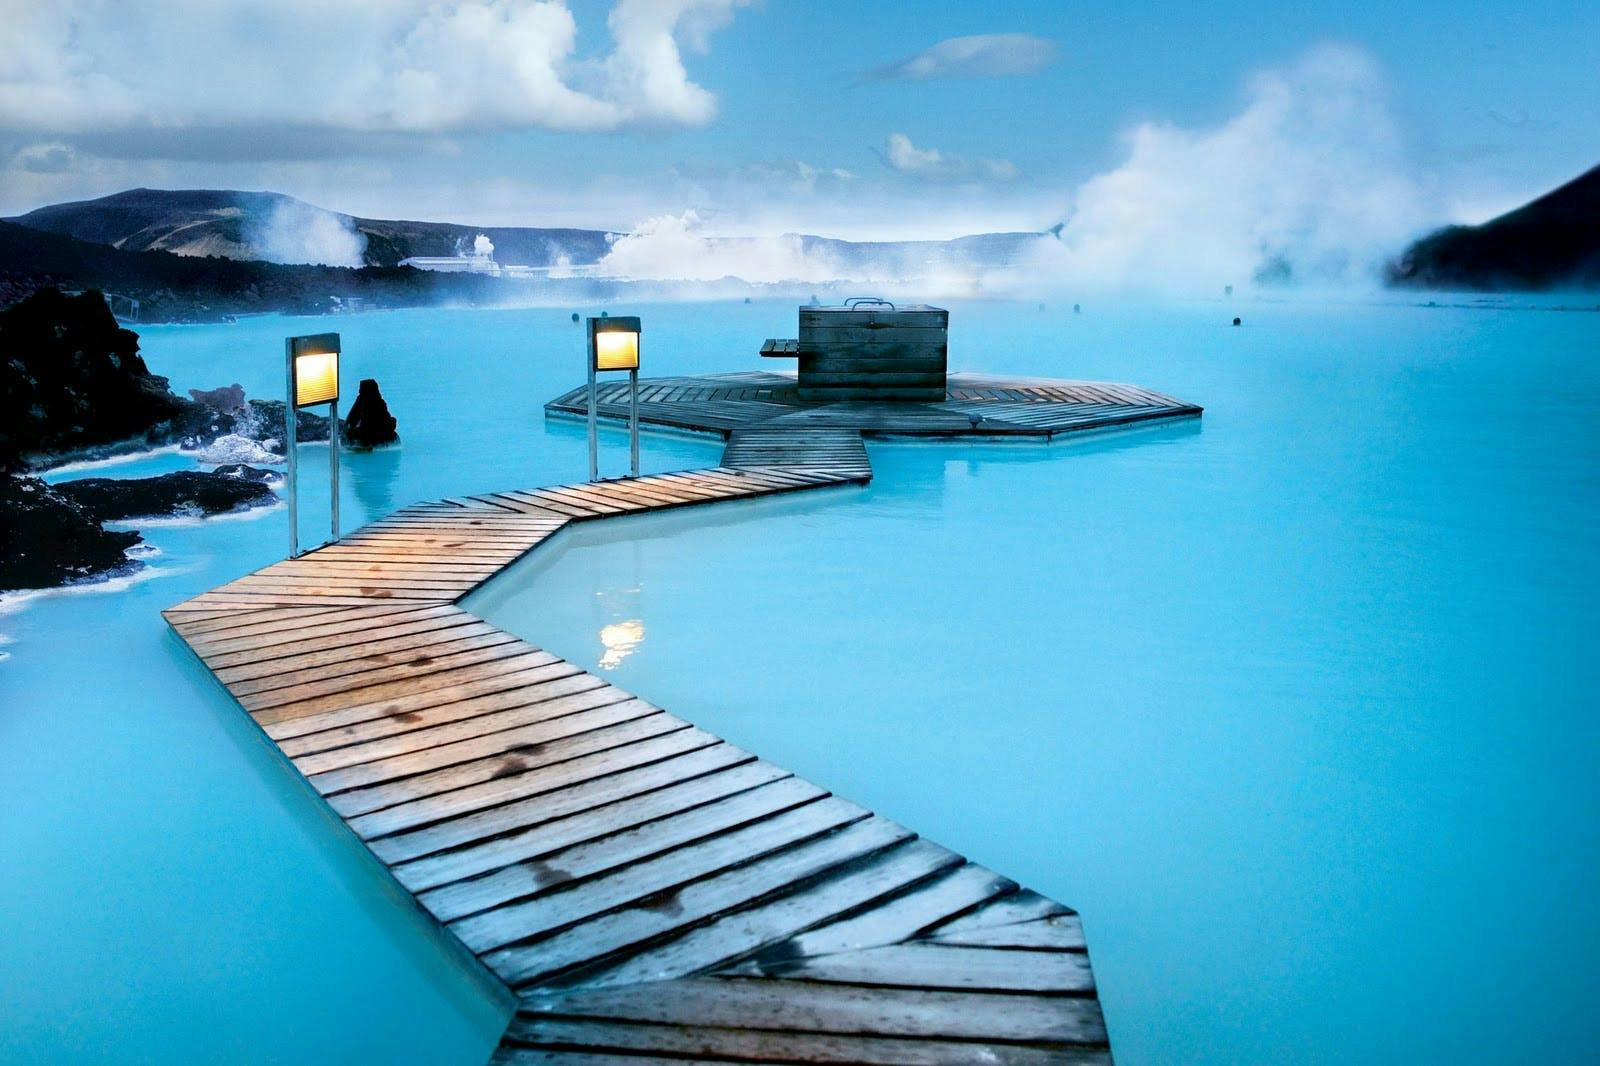 Comienza tu aventura en Islandia con un relajante baño en el spa geotérmico de la Laguna Azul.